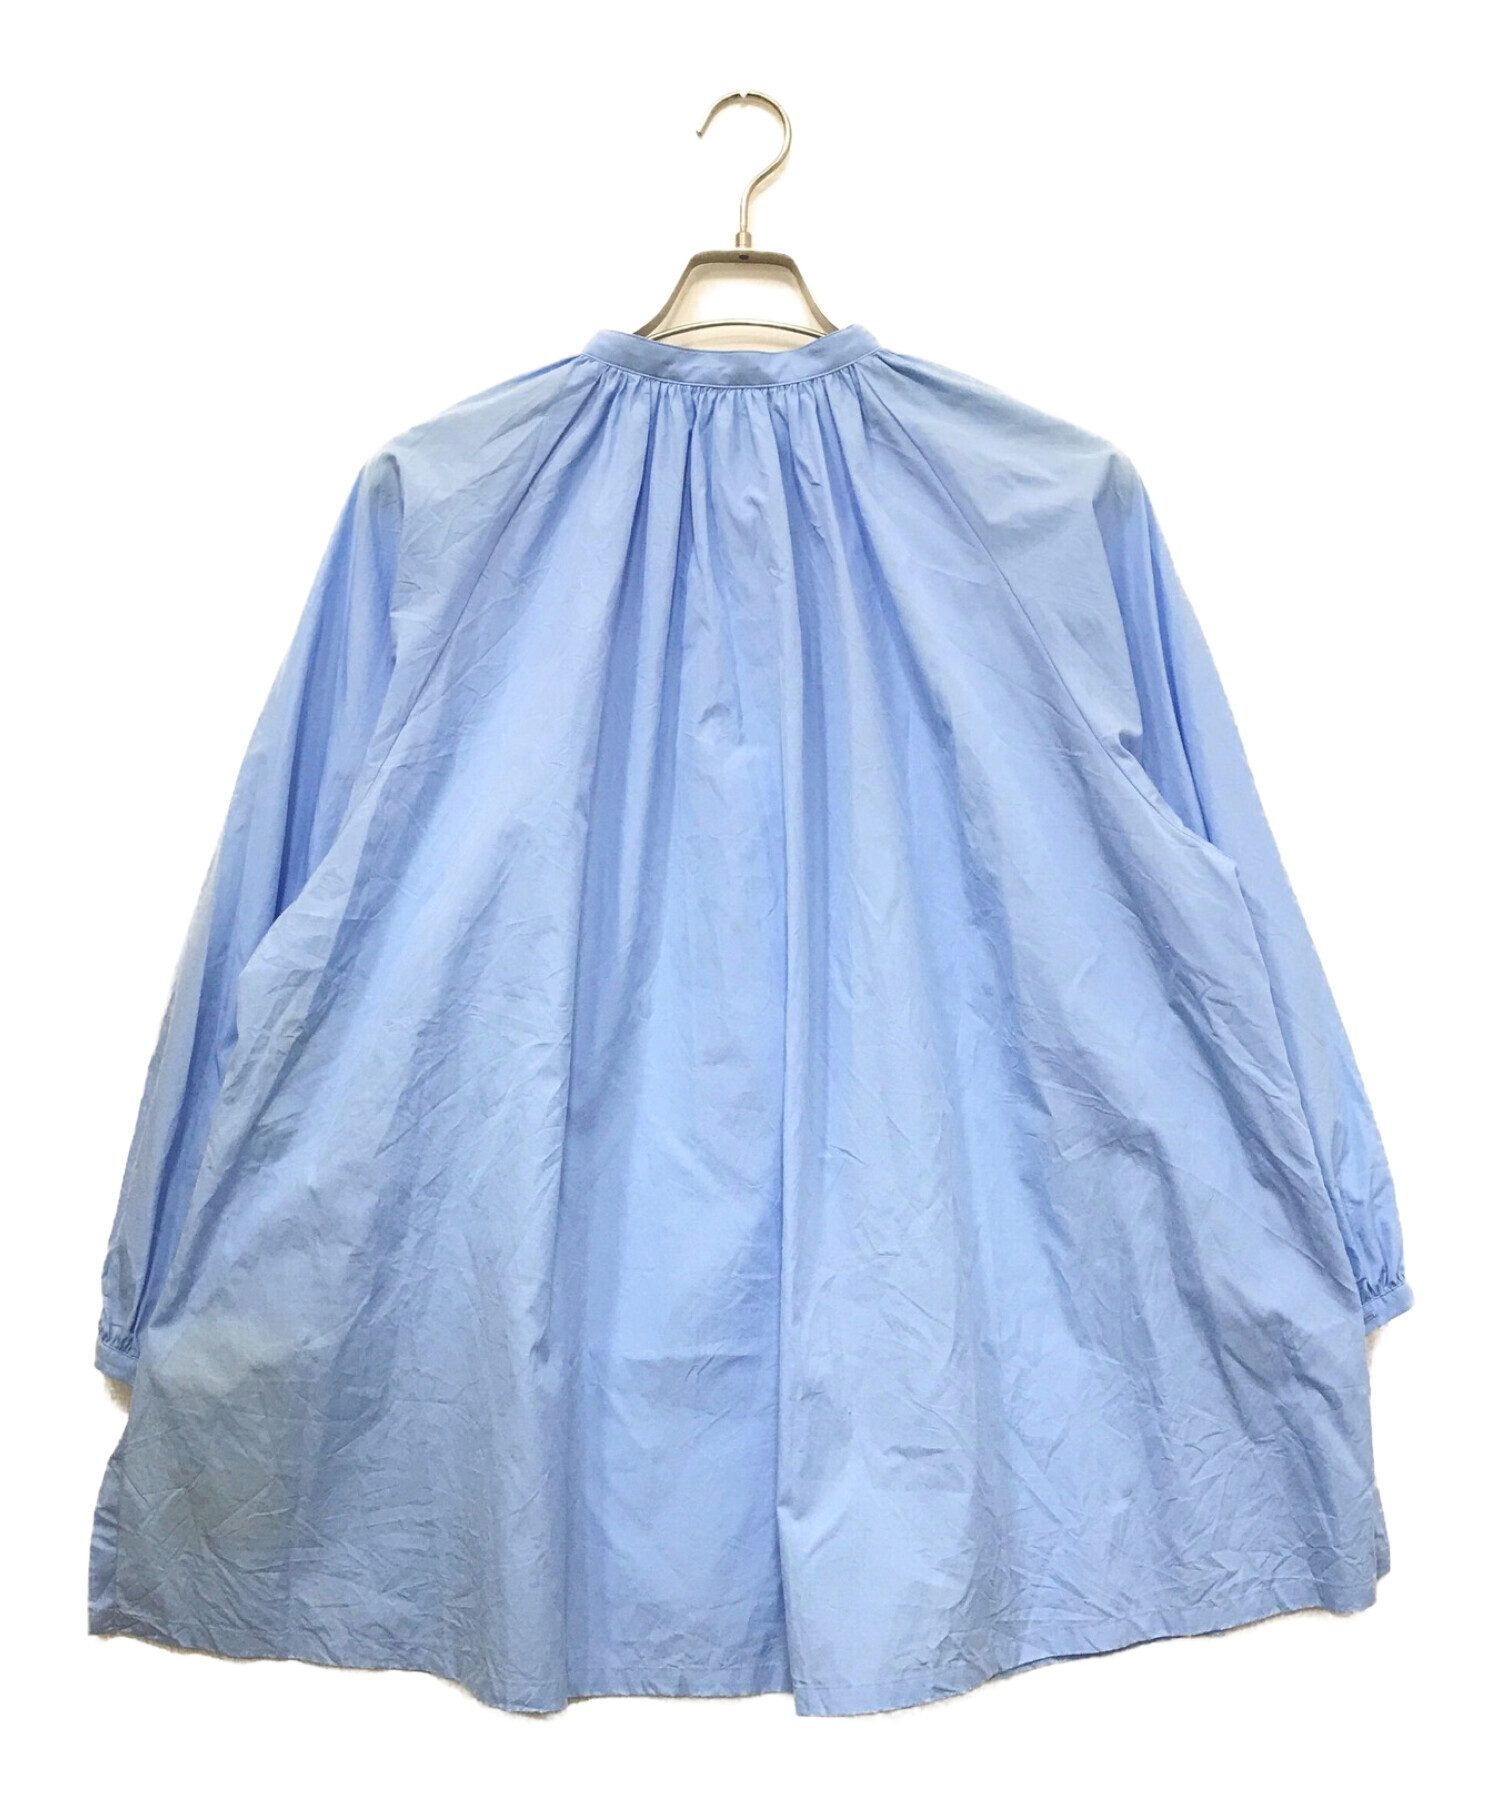 Traditional Weatherwear (トラディショナルウェザーウェア) ギャザードプラケットスタンドカラーシャツ ブルー サイズ:36  未使用品